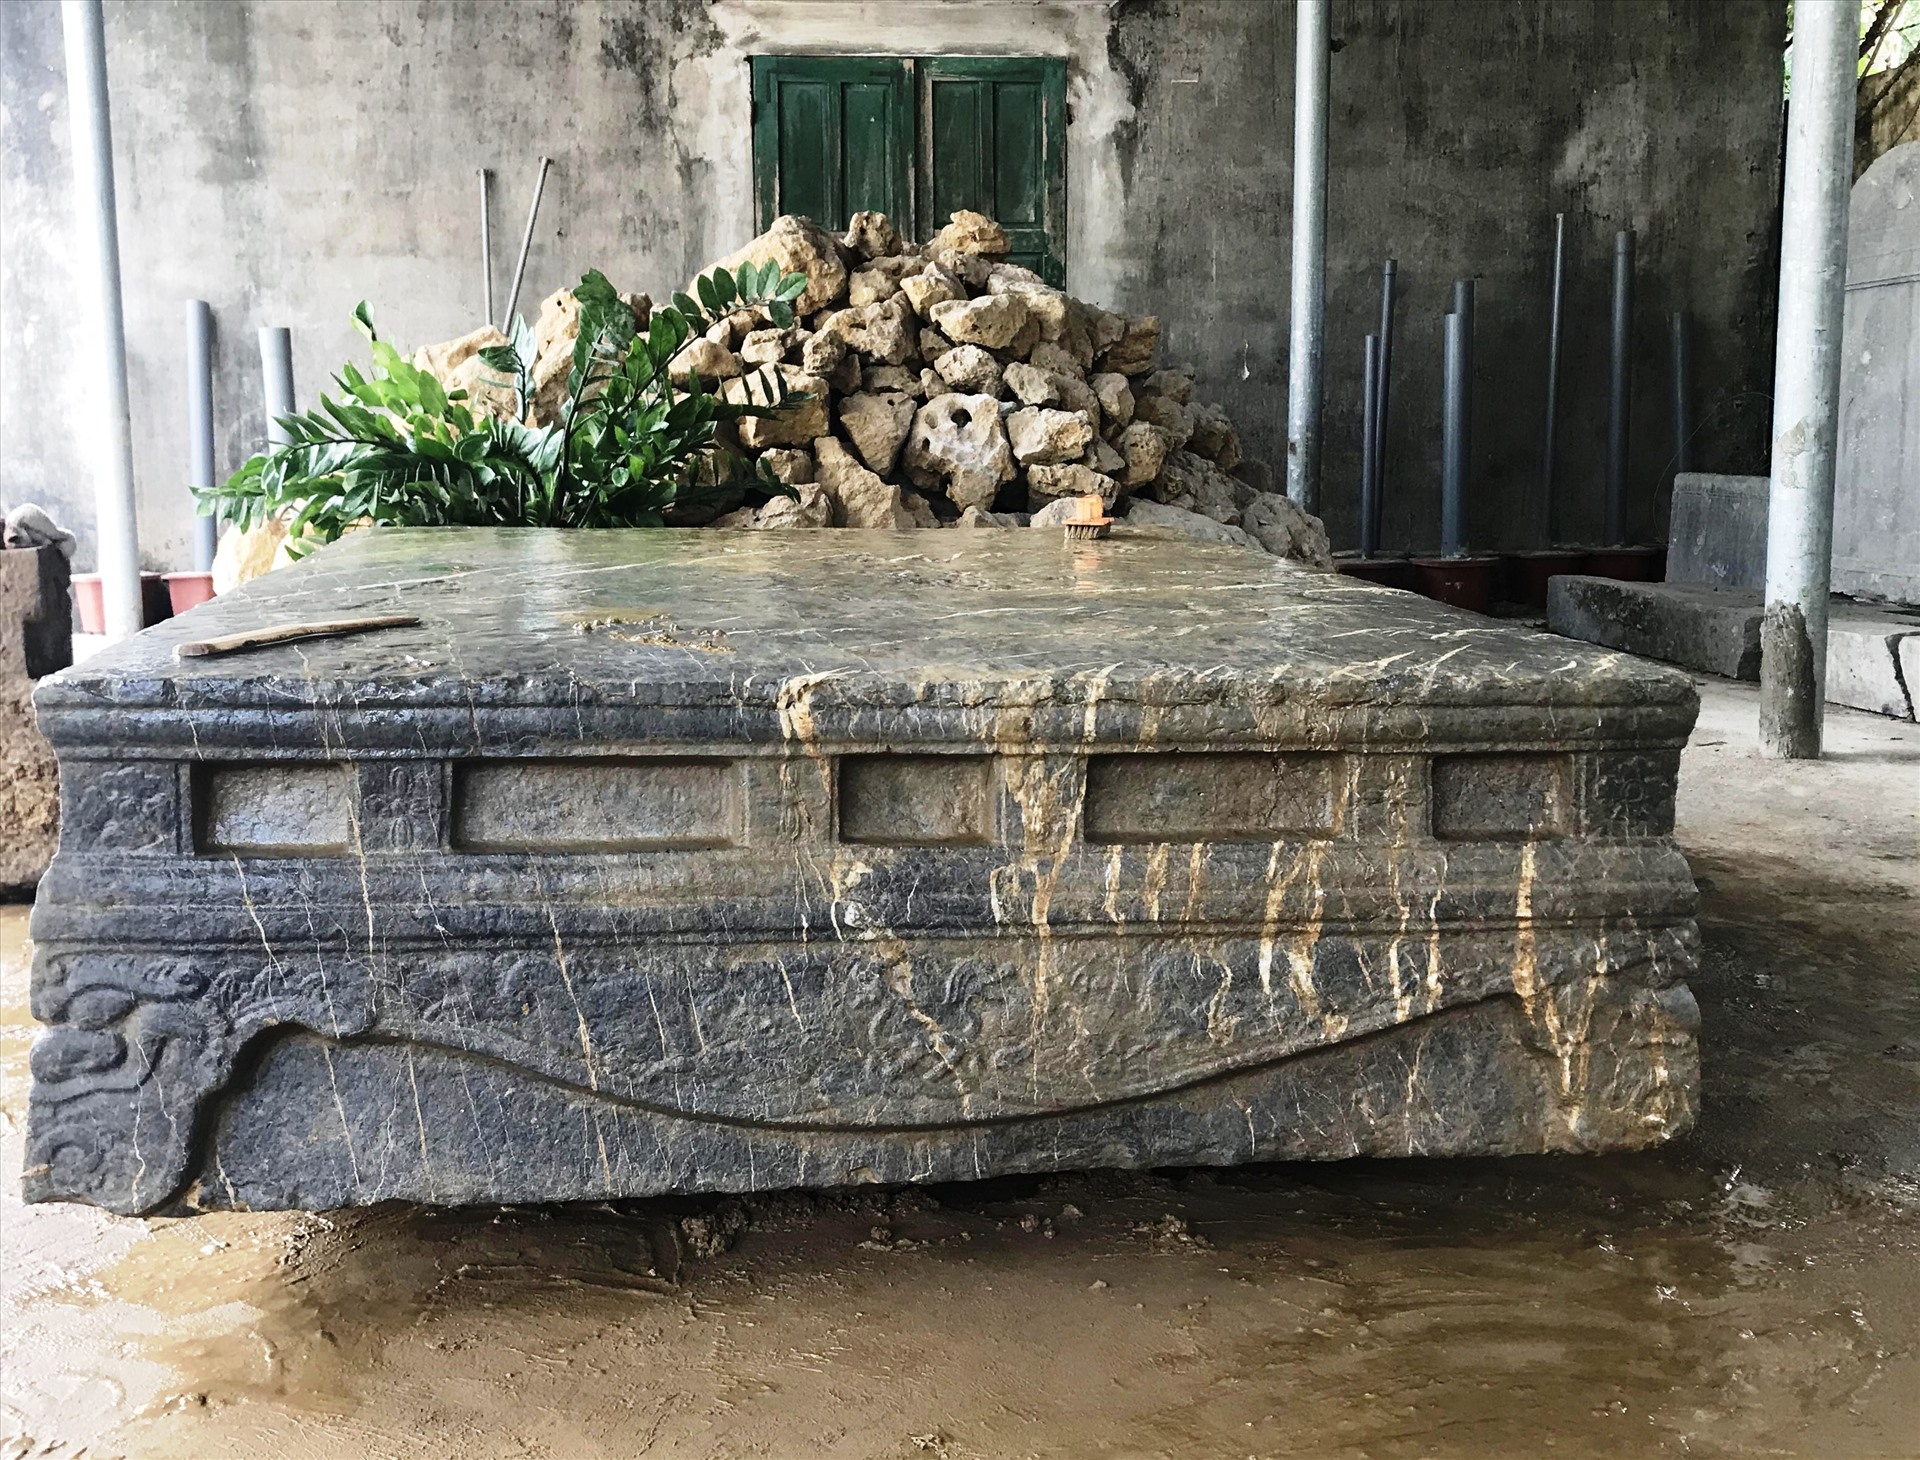 Hiện chiếc sập đá cổ này đang được bảo quản và lưu giữ tại Bảo tàng tỉnh Ninh Bình. Ảnh: Diệu Anh